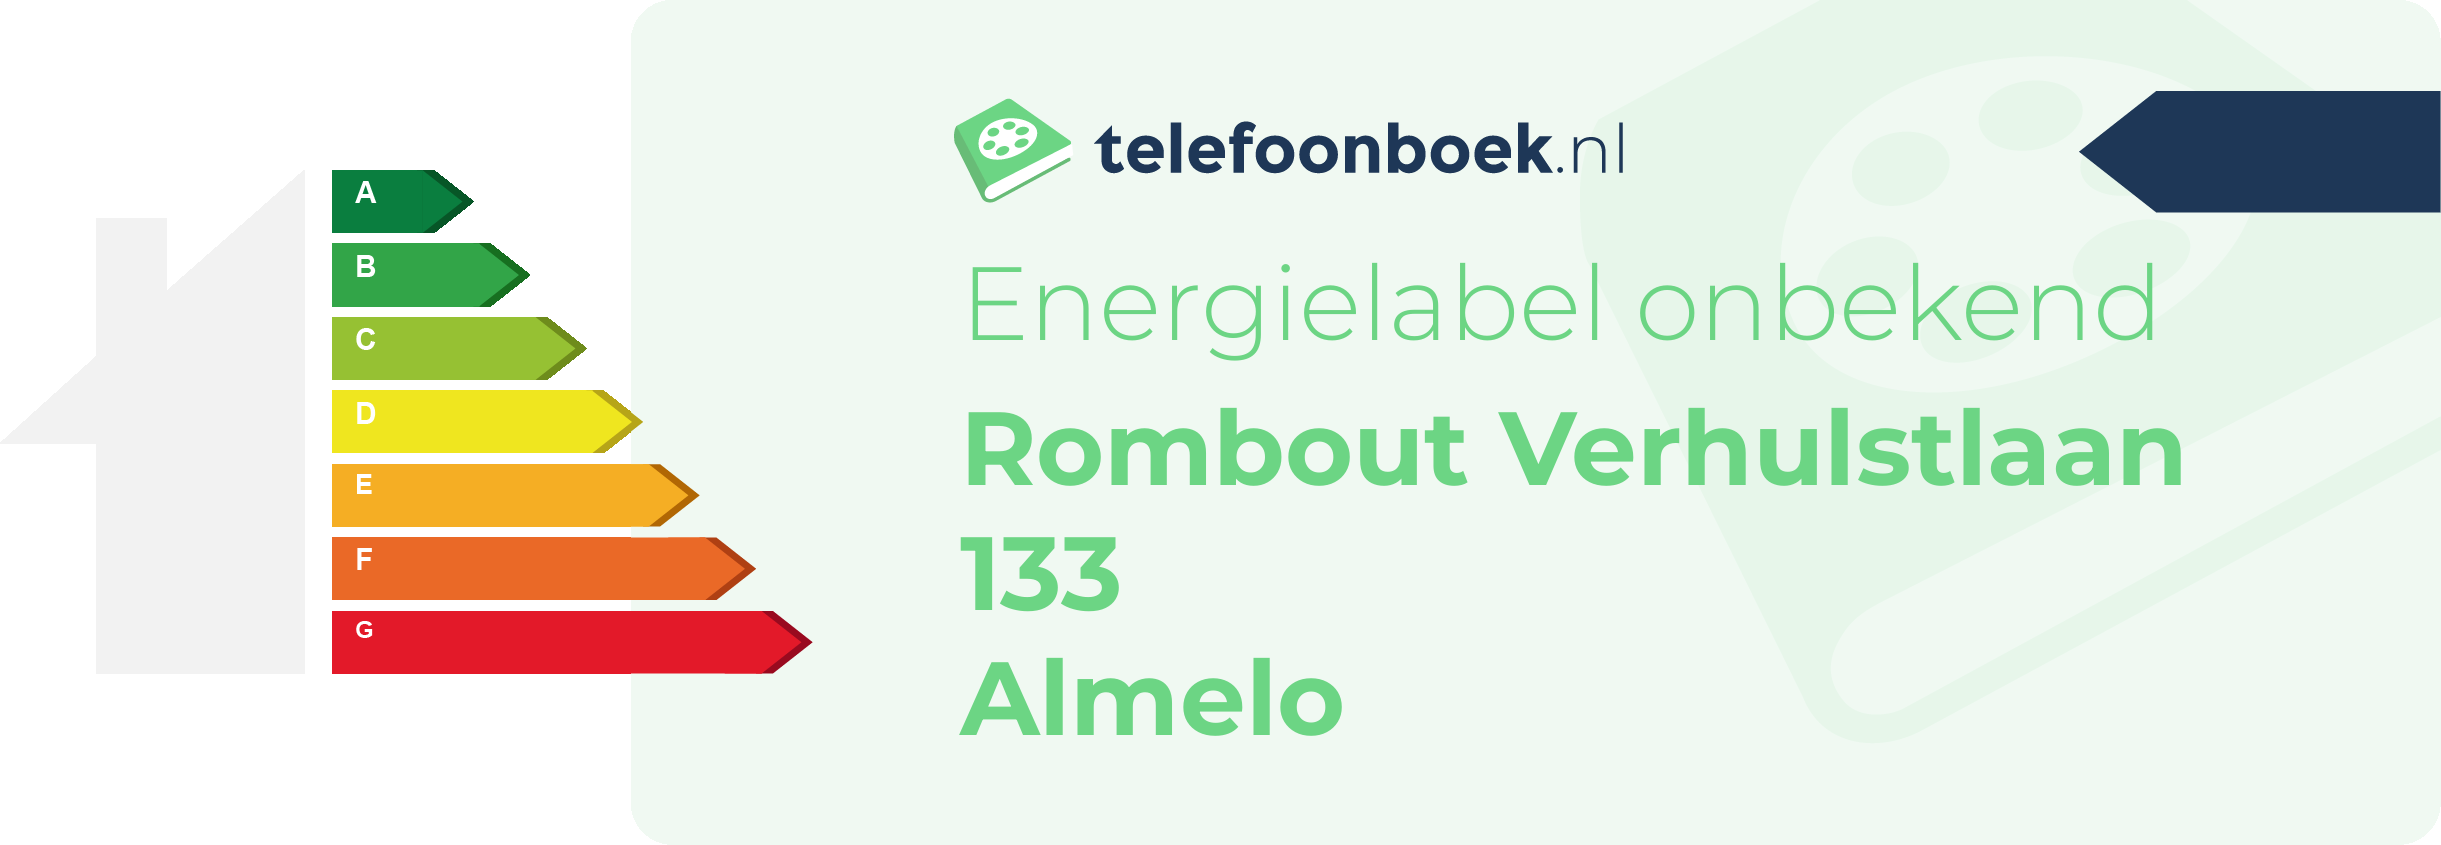 Energielabel Rombout Verhulstlaan 133 Almelo